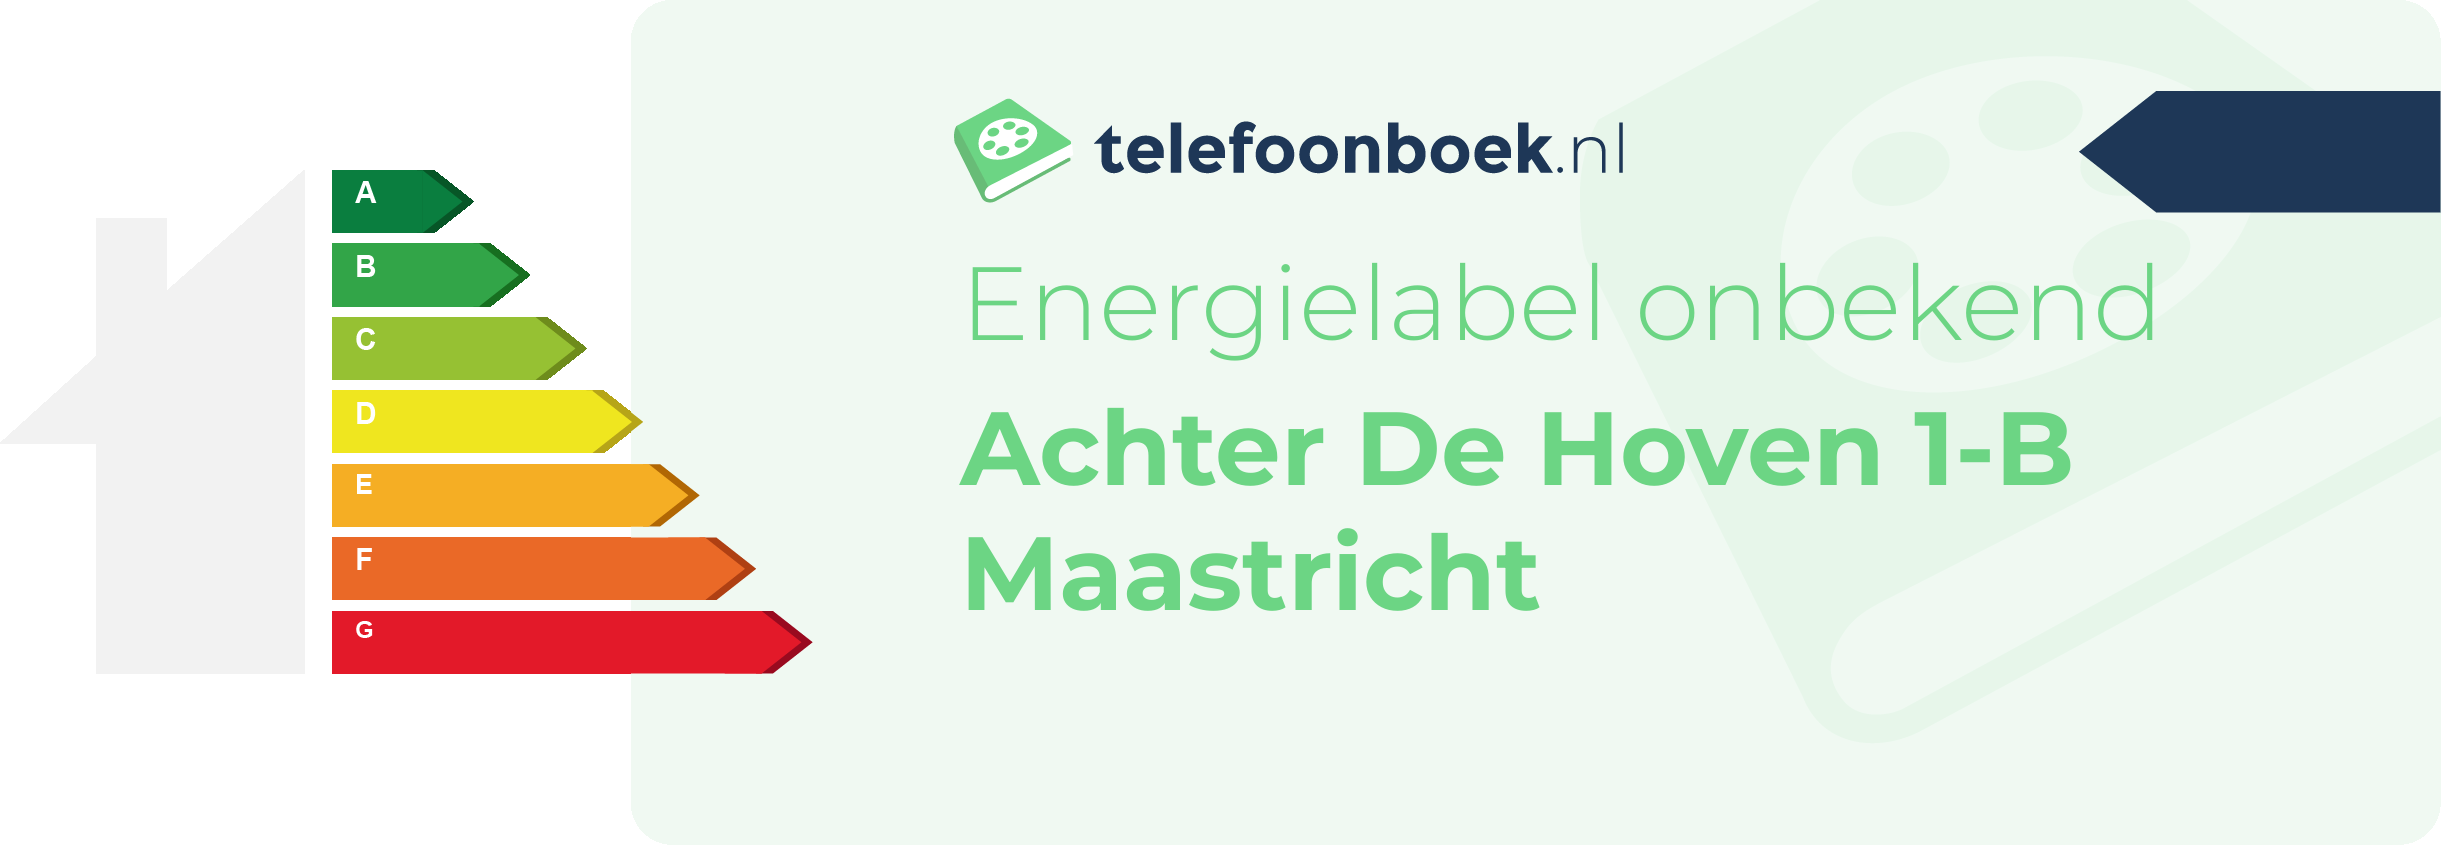 Energielabel Achter De Hoven 1-B Maastricht